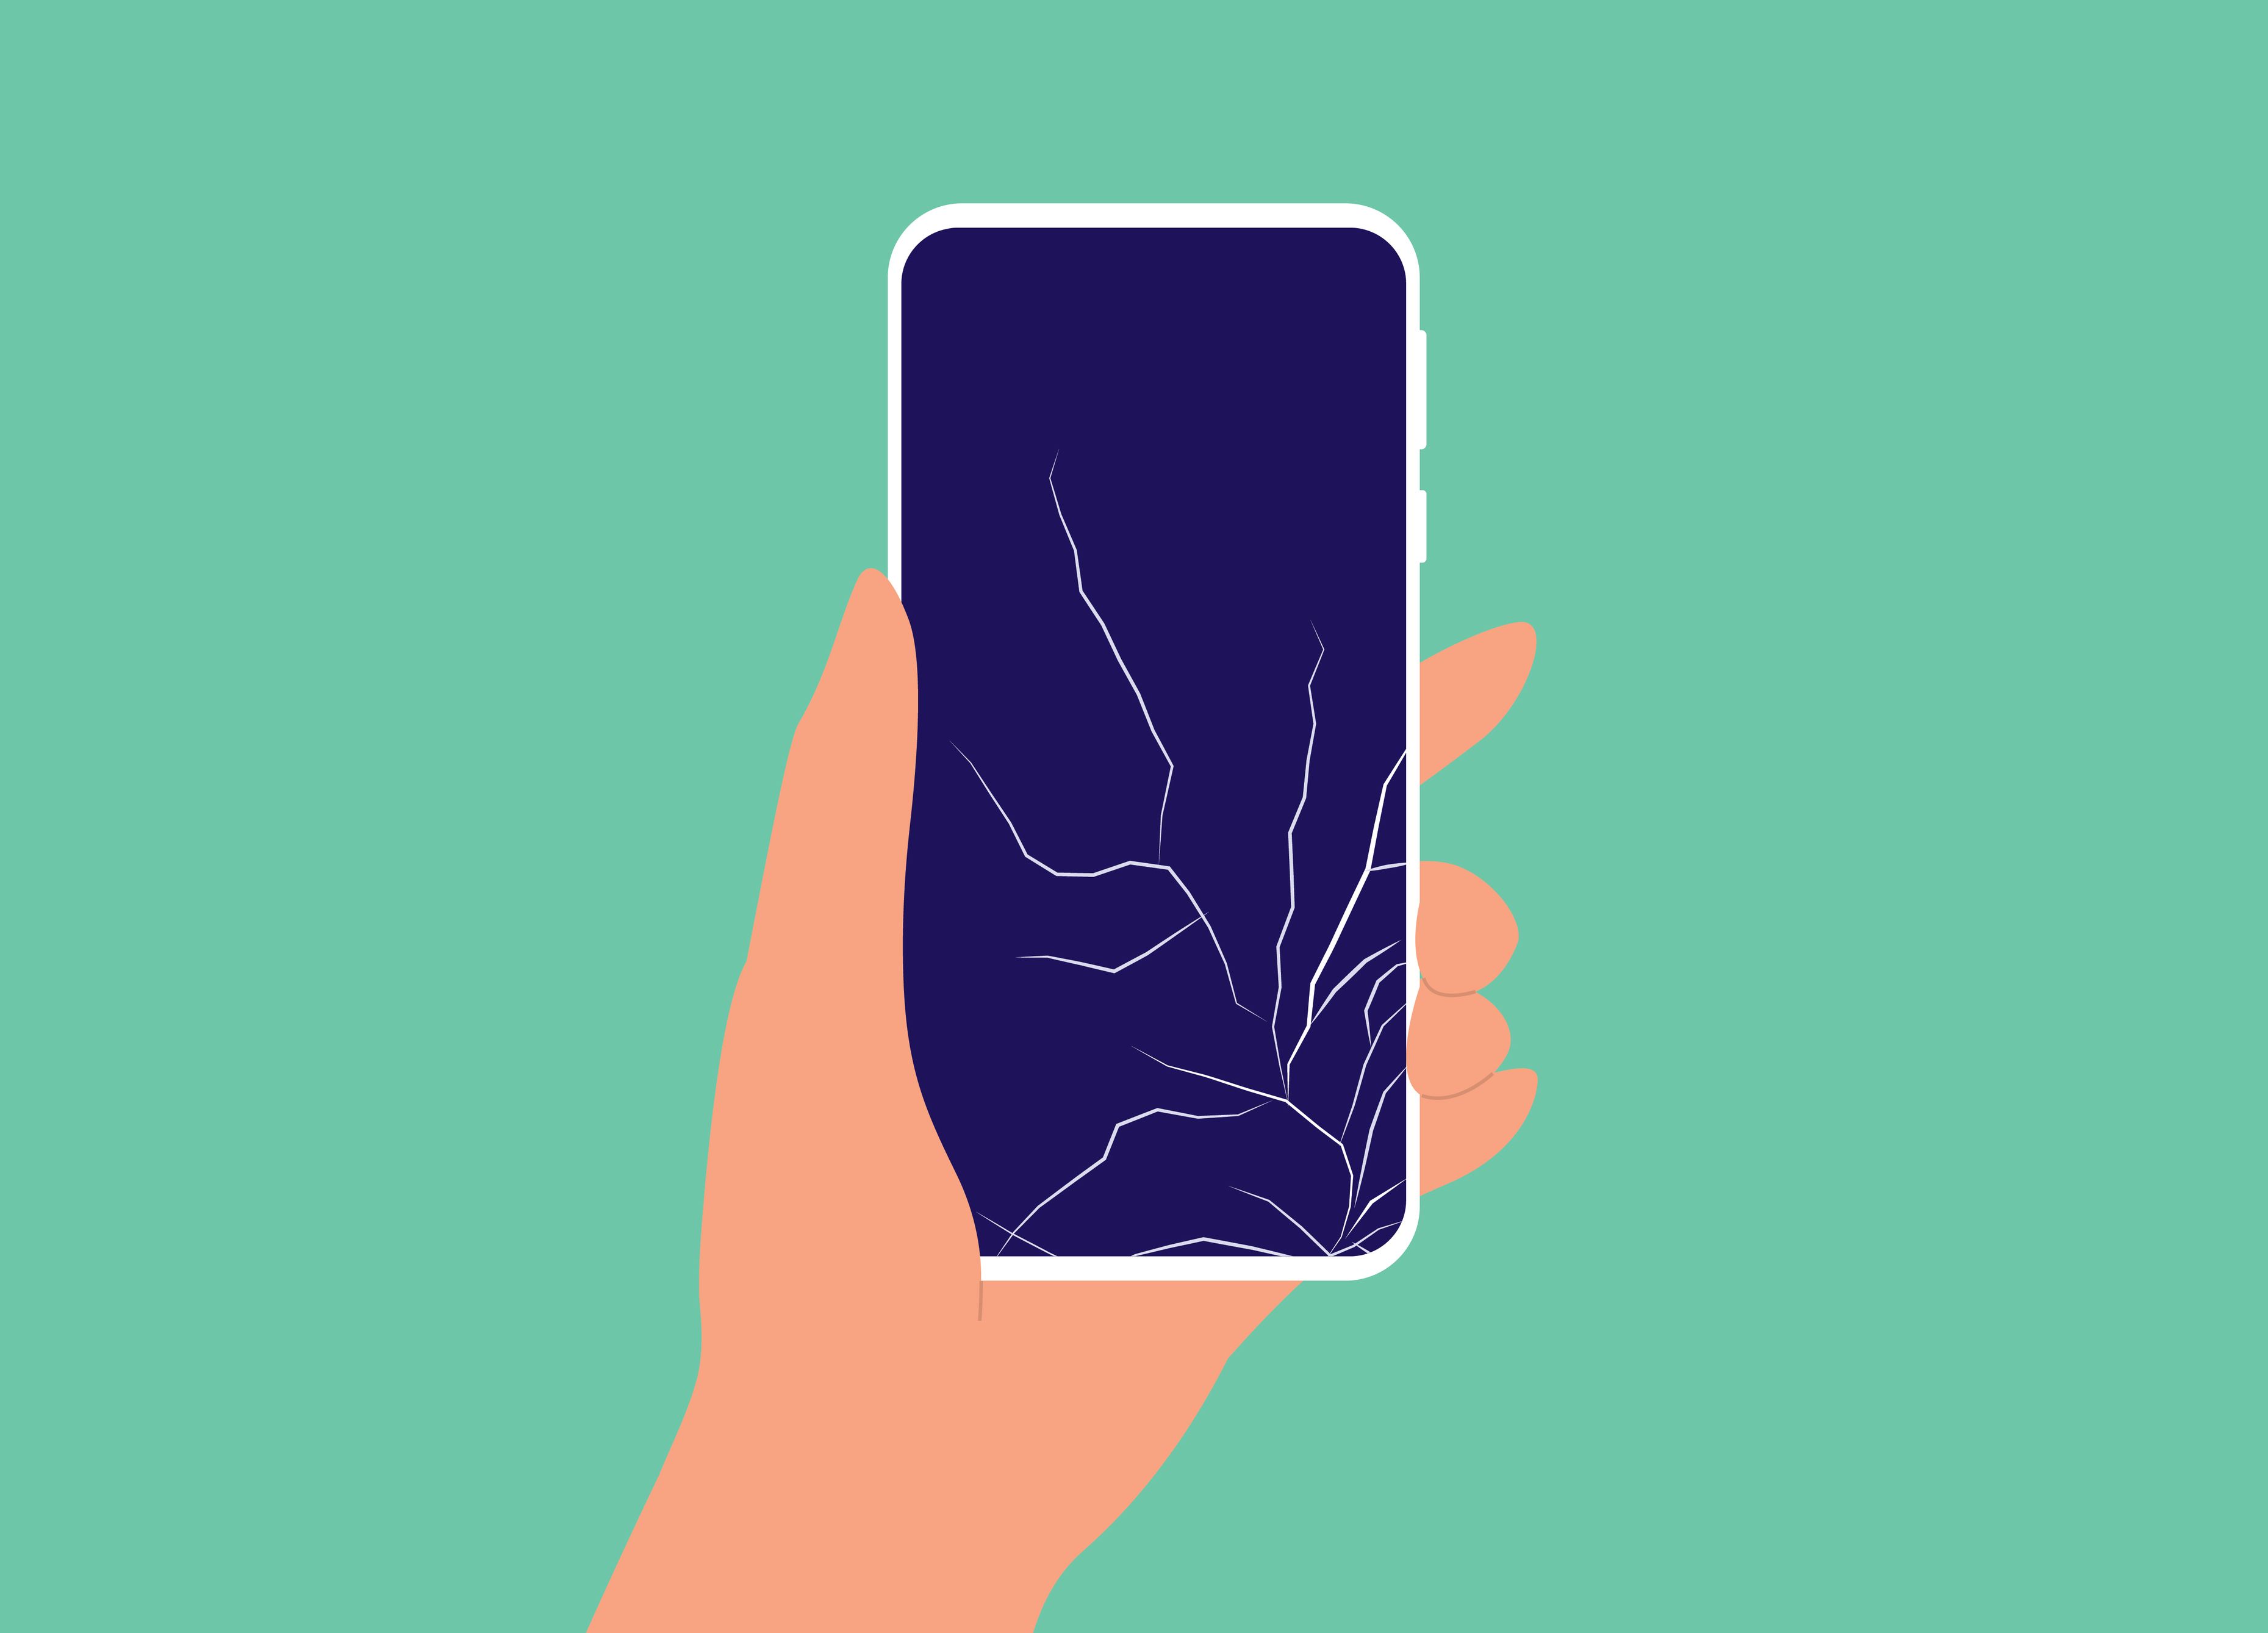 Illustration von einer Hand, die ein kaputtes Smartphone in der Hand hält